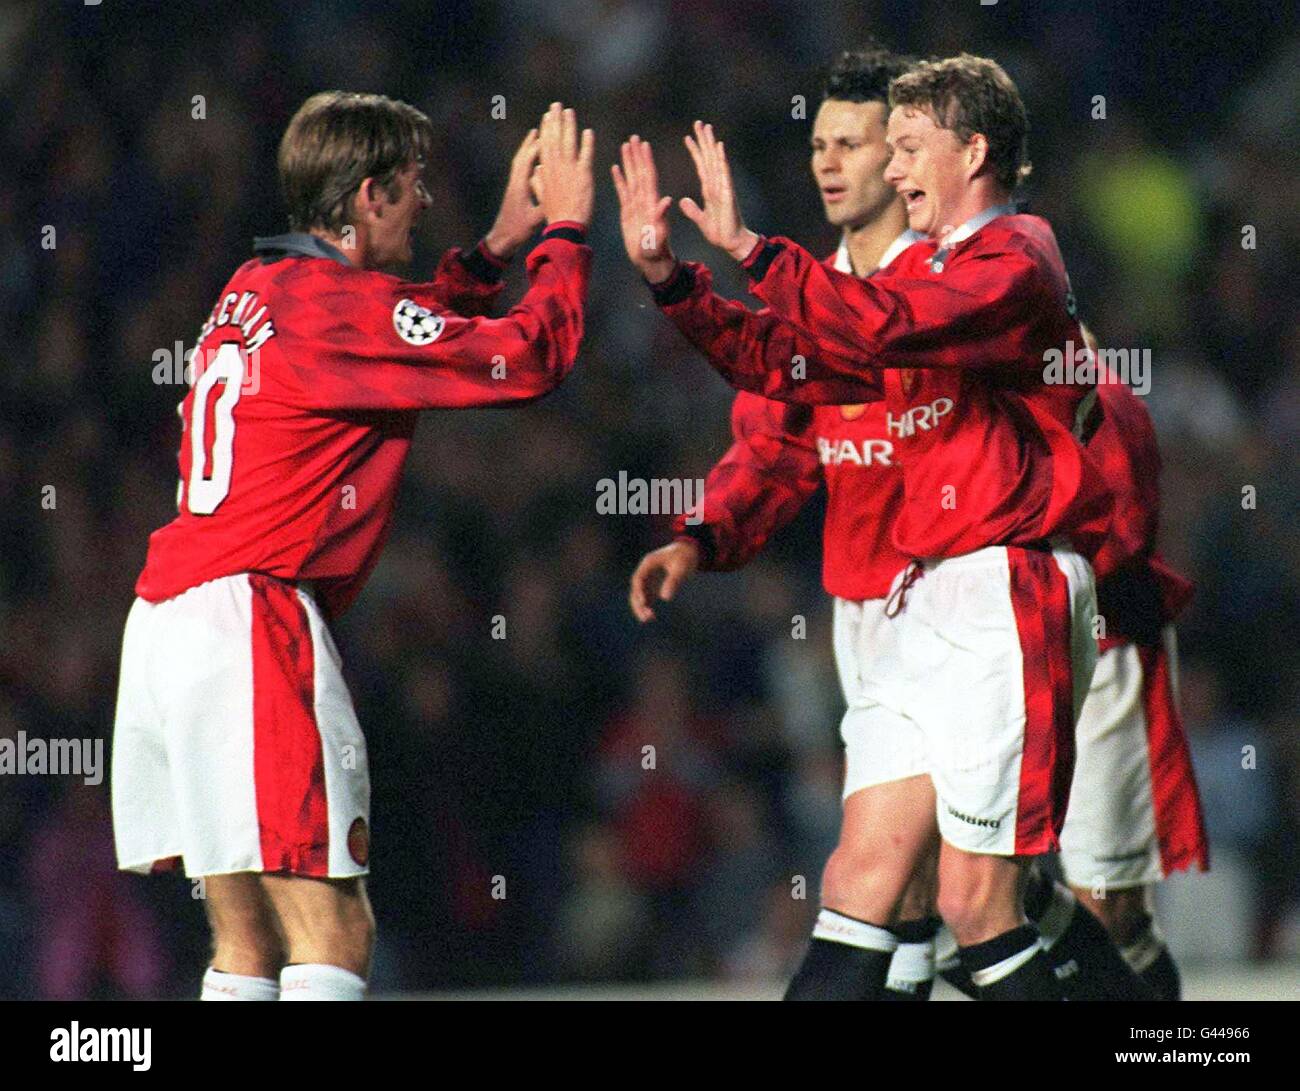 Les parrains de Manchester Uniteds David Beckham(à gauche) et Ole Solskjaer célèbrent leurs deux buts contre Rapid Wien dans la Ligue des champions de l'UEFA ce soir (mercredi).Photo de John Giles.PA. Banque D'Images